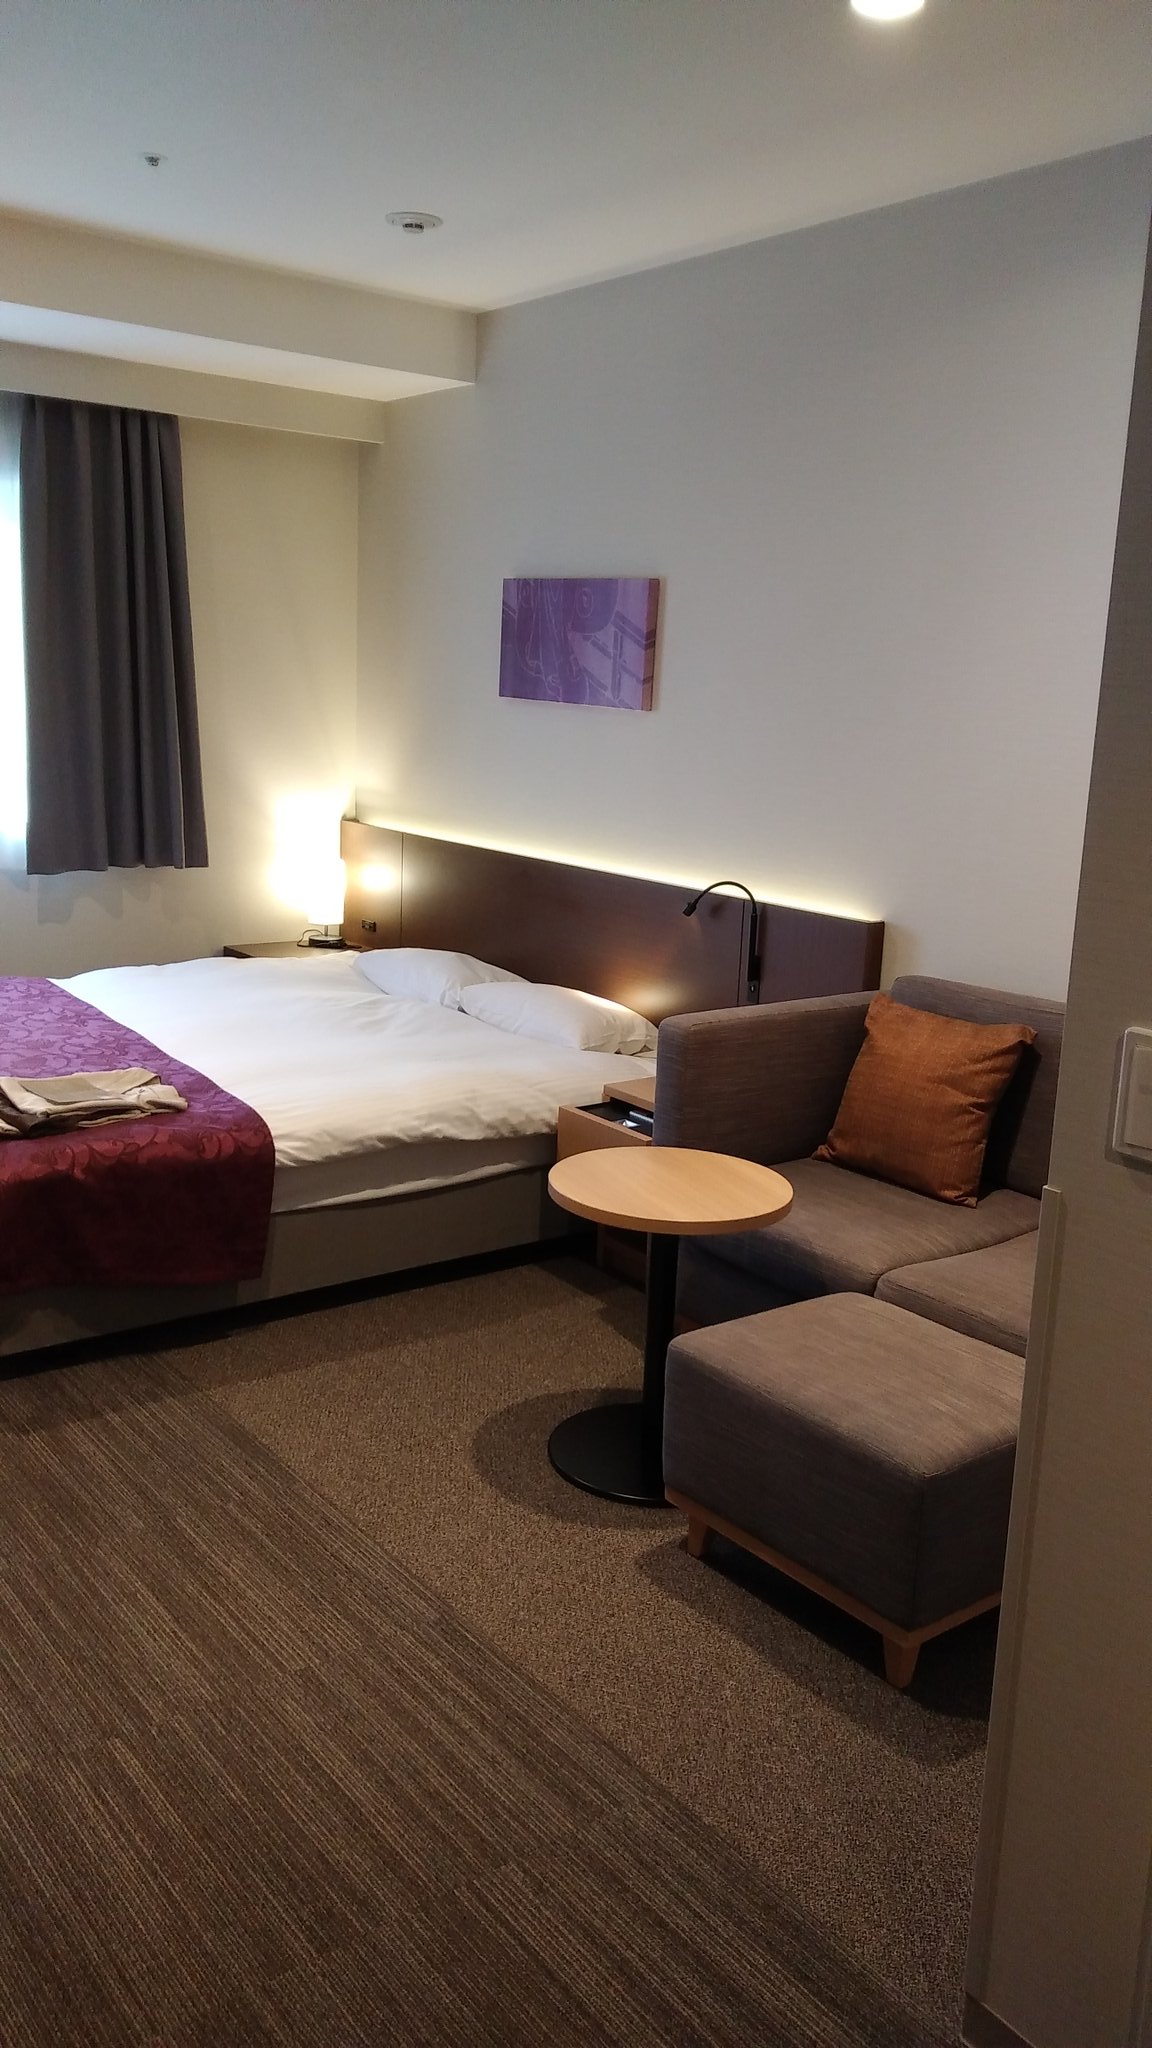 札幌でおしゃれな宿泊を インスタ映えホテル22選 カップルや女子旅に 旅行 お出かけの情報メディア